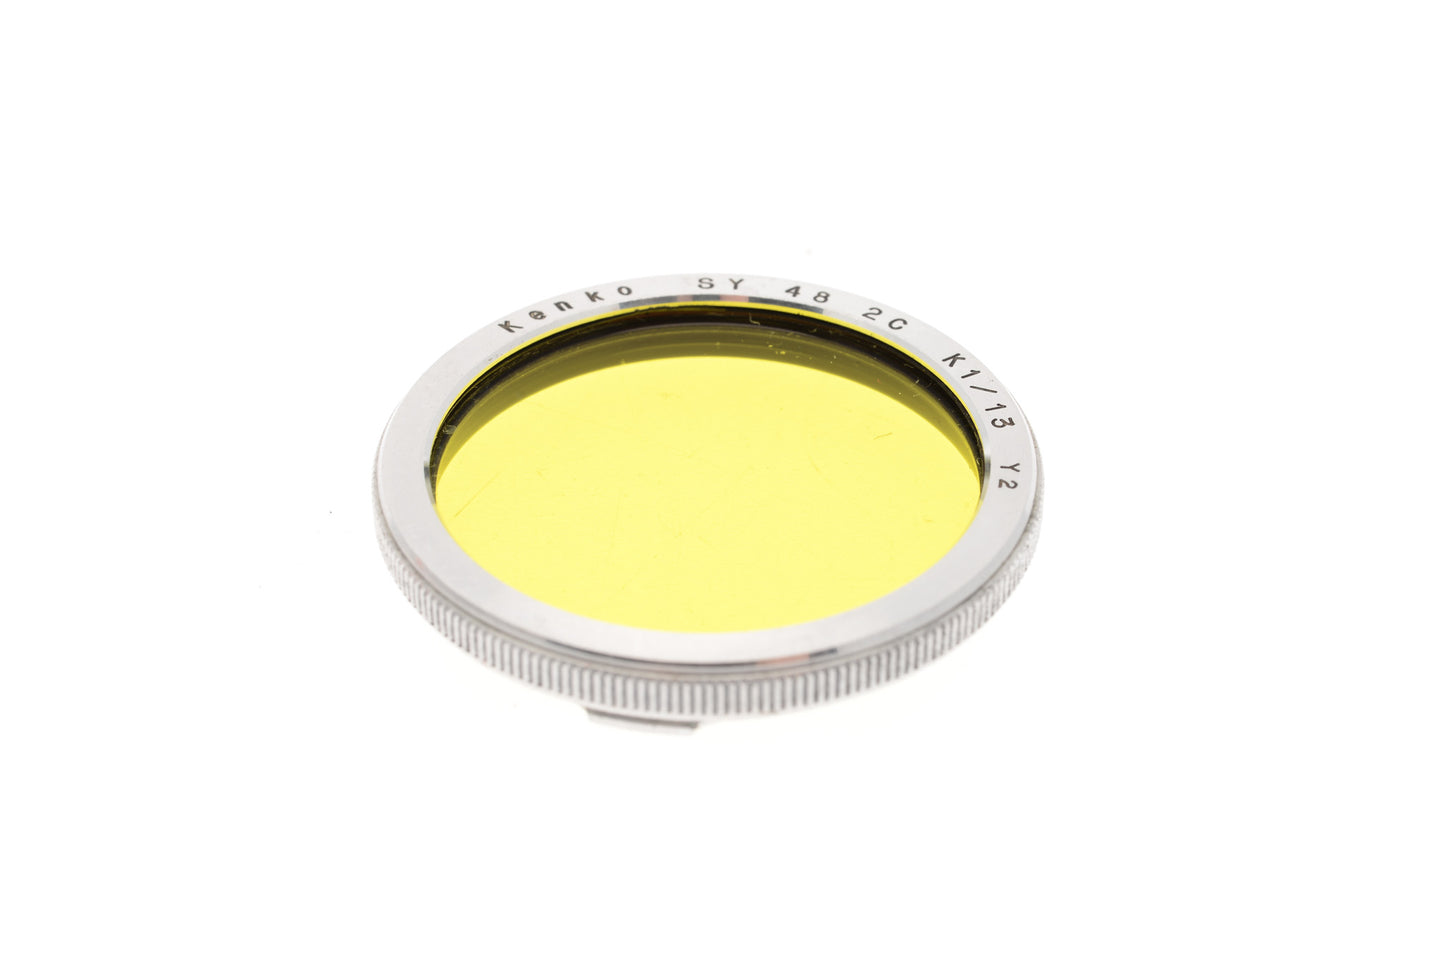 Kenko Bay I Yellow Filter SY 48 2C K1/13 - Accessory